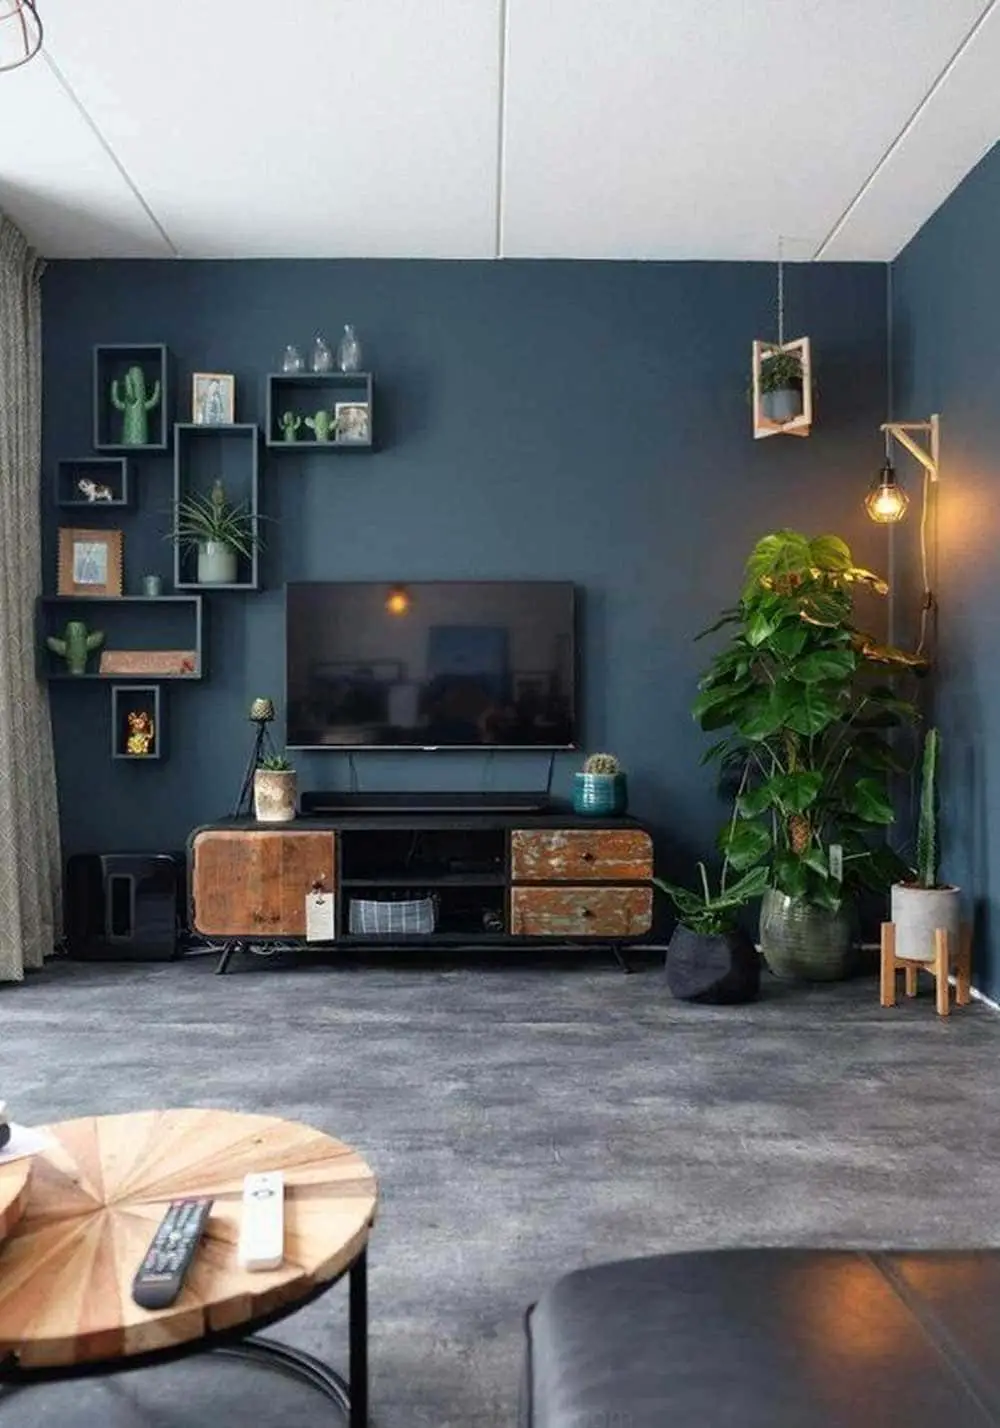 Salon moderne meublé de mobilier design aux murs bleu pétrole